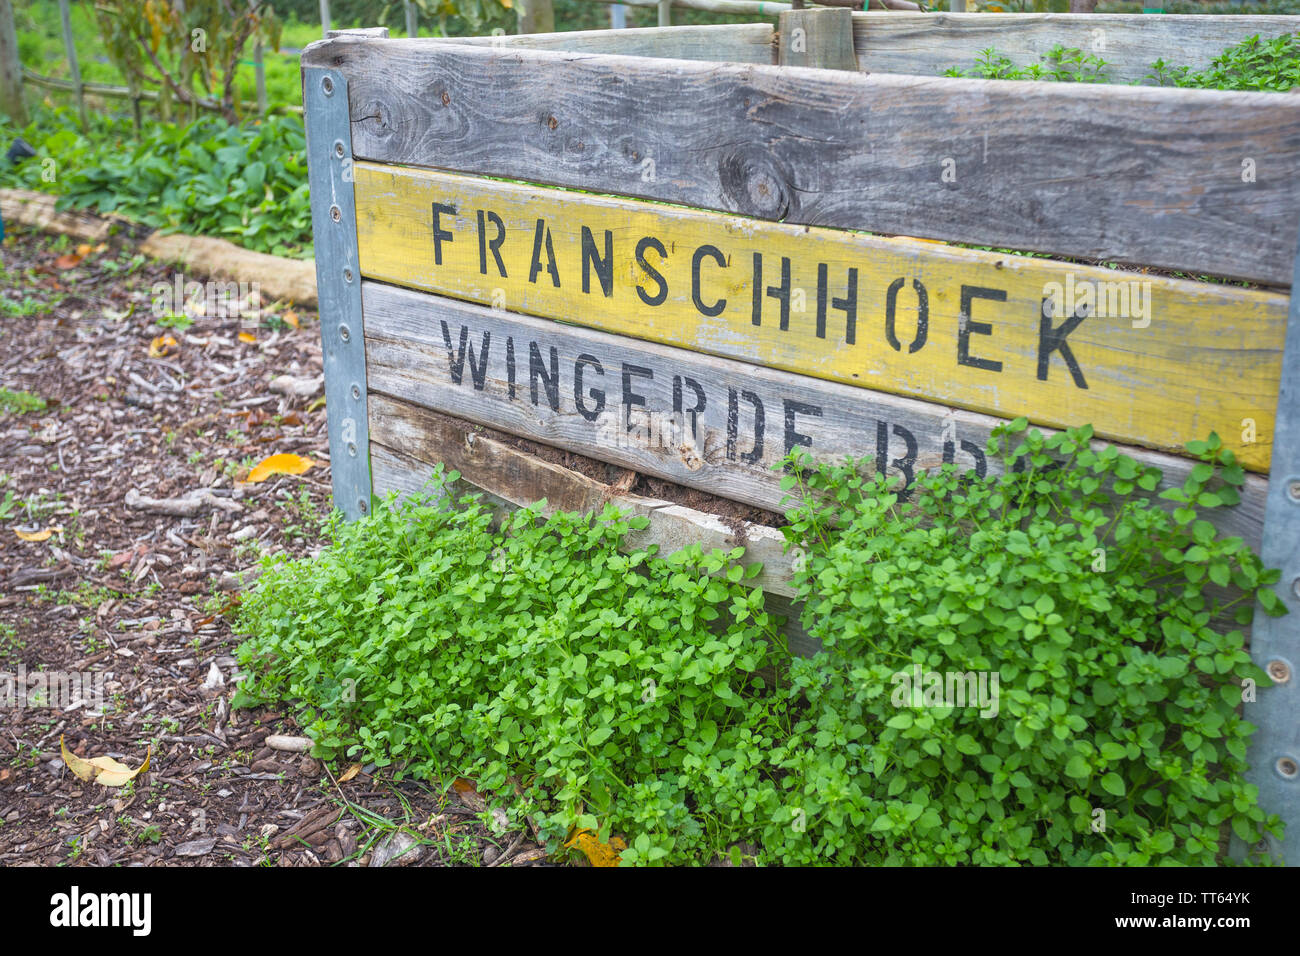 Alte verwitterte und Wetter geschlagen Holz- oder Holz Kiste oder Verpackung Fall die Komposttonne in einem Garten am Weingut Boschendal verwendet wird. Stockfoto